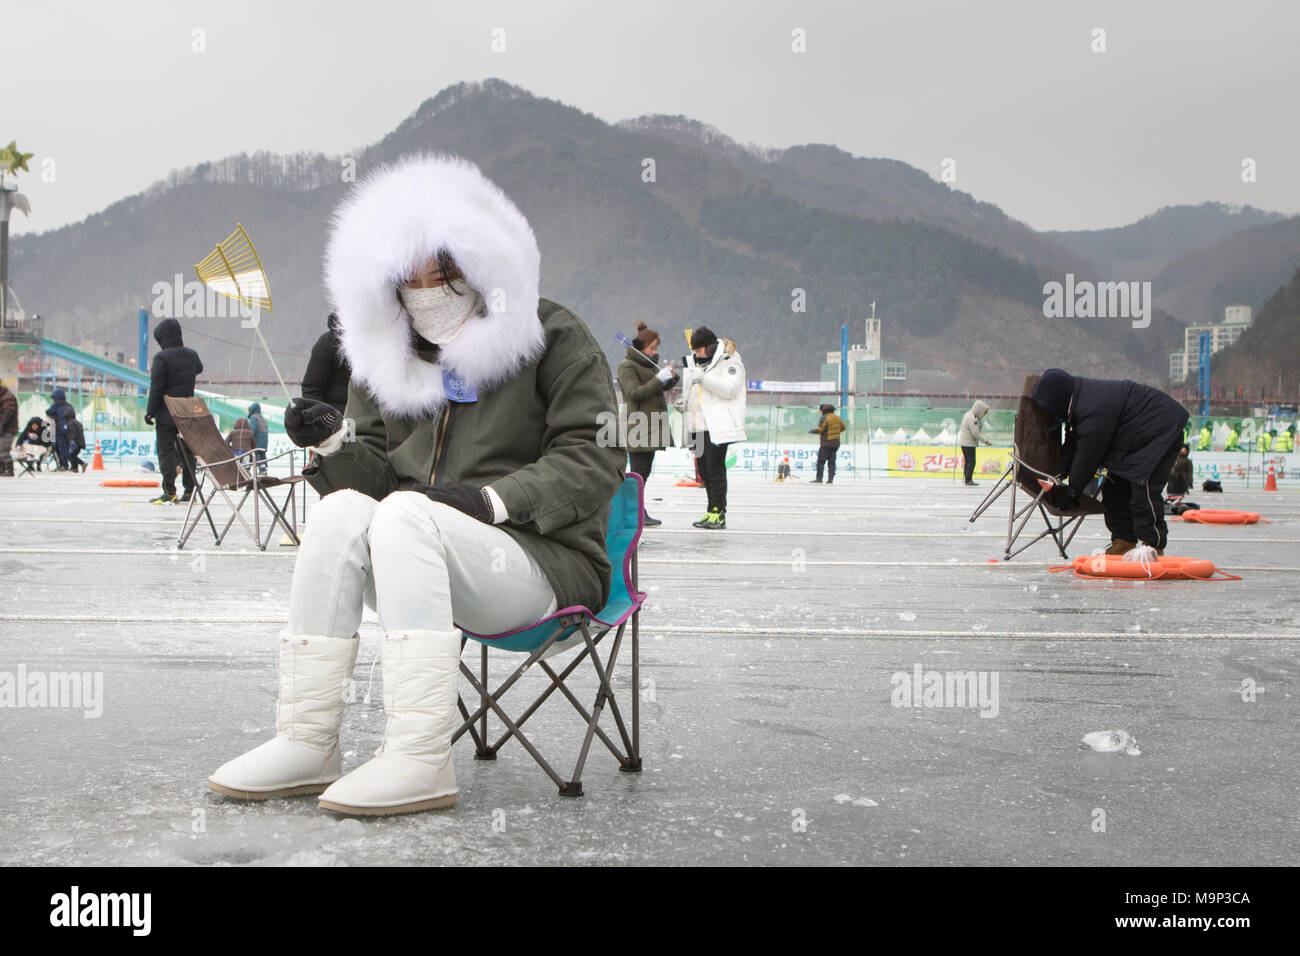 Una Donna vestita calorosamente in una folta pelliccia è in attesa al di sopra di un buco nel ghiaccio durante la pesca sul ghiaccio festival presso Hwacheon Sancheoneo nella regione del Gangwon-do di Corea del Sud. Il Hwacheon Sancheoneo Festival di ghiaccio è una tradizione per il popolo coreano. Ogni anno nel mese di gennaio la folla si riuniranno presso il fiume congelato per celebrare il freddo e la neve dell'inverno. Attrazione principale è la pesca sul ghiaccio. Giovani e vecchi attendere pazientemente su un piccolo buco nel ghiaccio per una trota di mordere. In tende possono lasciare il pesce grigliato dopo che loro sono mangiati. Tra le altre attività sono corse in slittino e pattinaggio sul ghiaccio. La vicina Pyeongchang Foto Stock